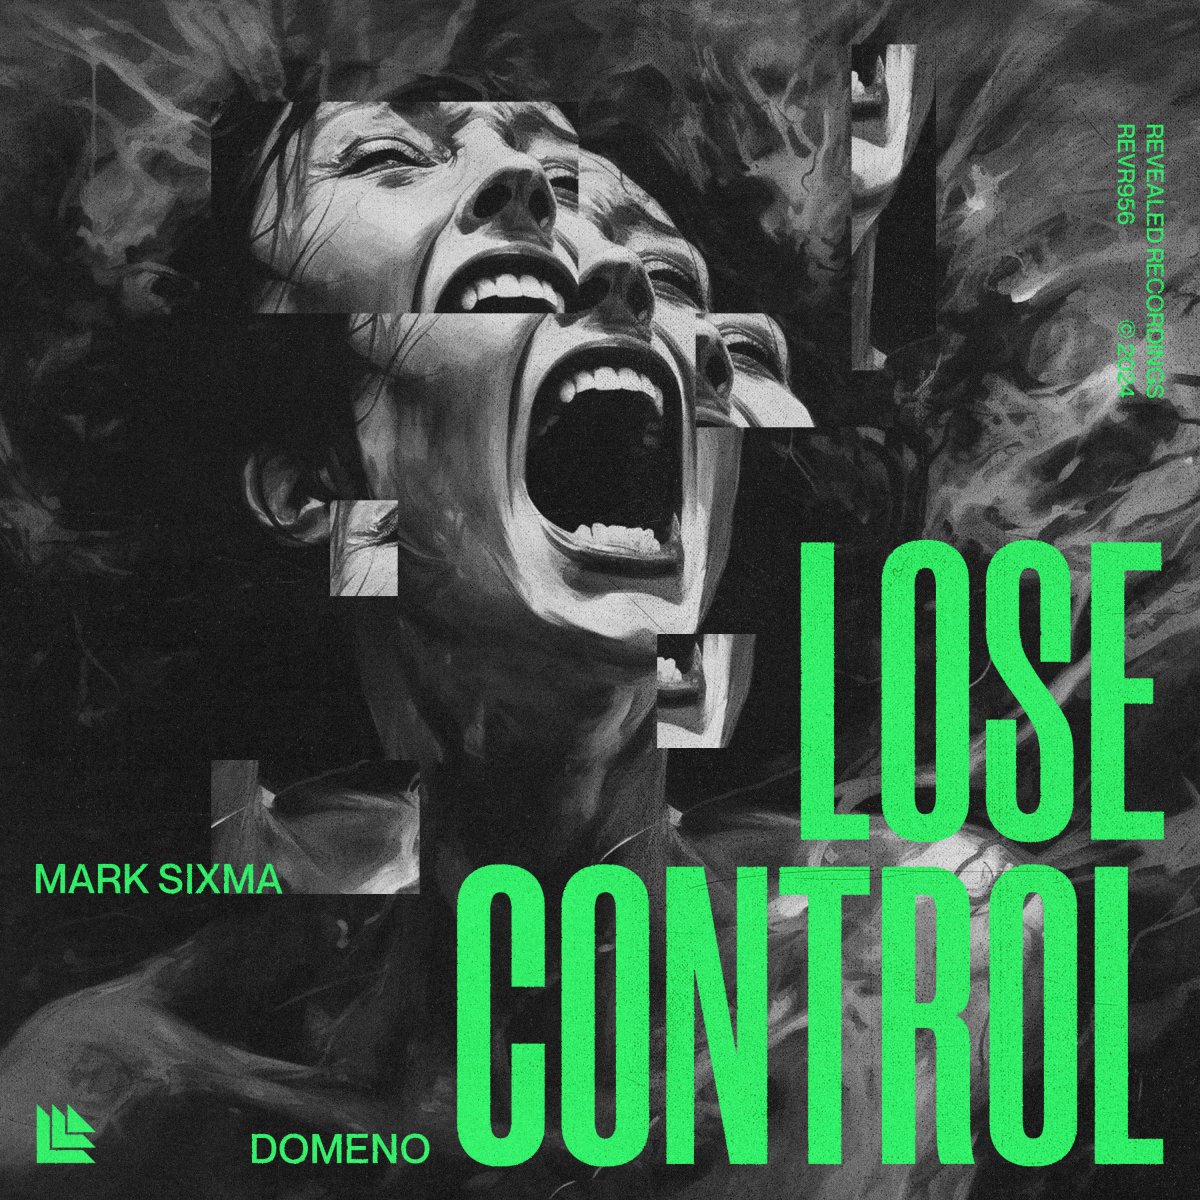 Lose Control - Mark Sixma⁠ & Domeno⁠ 